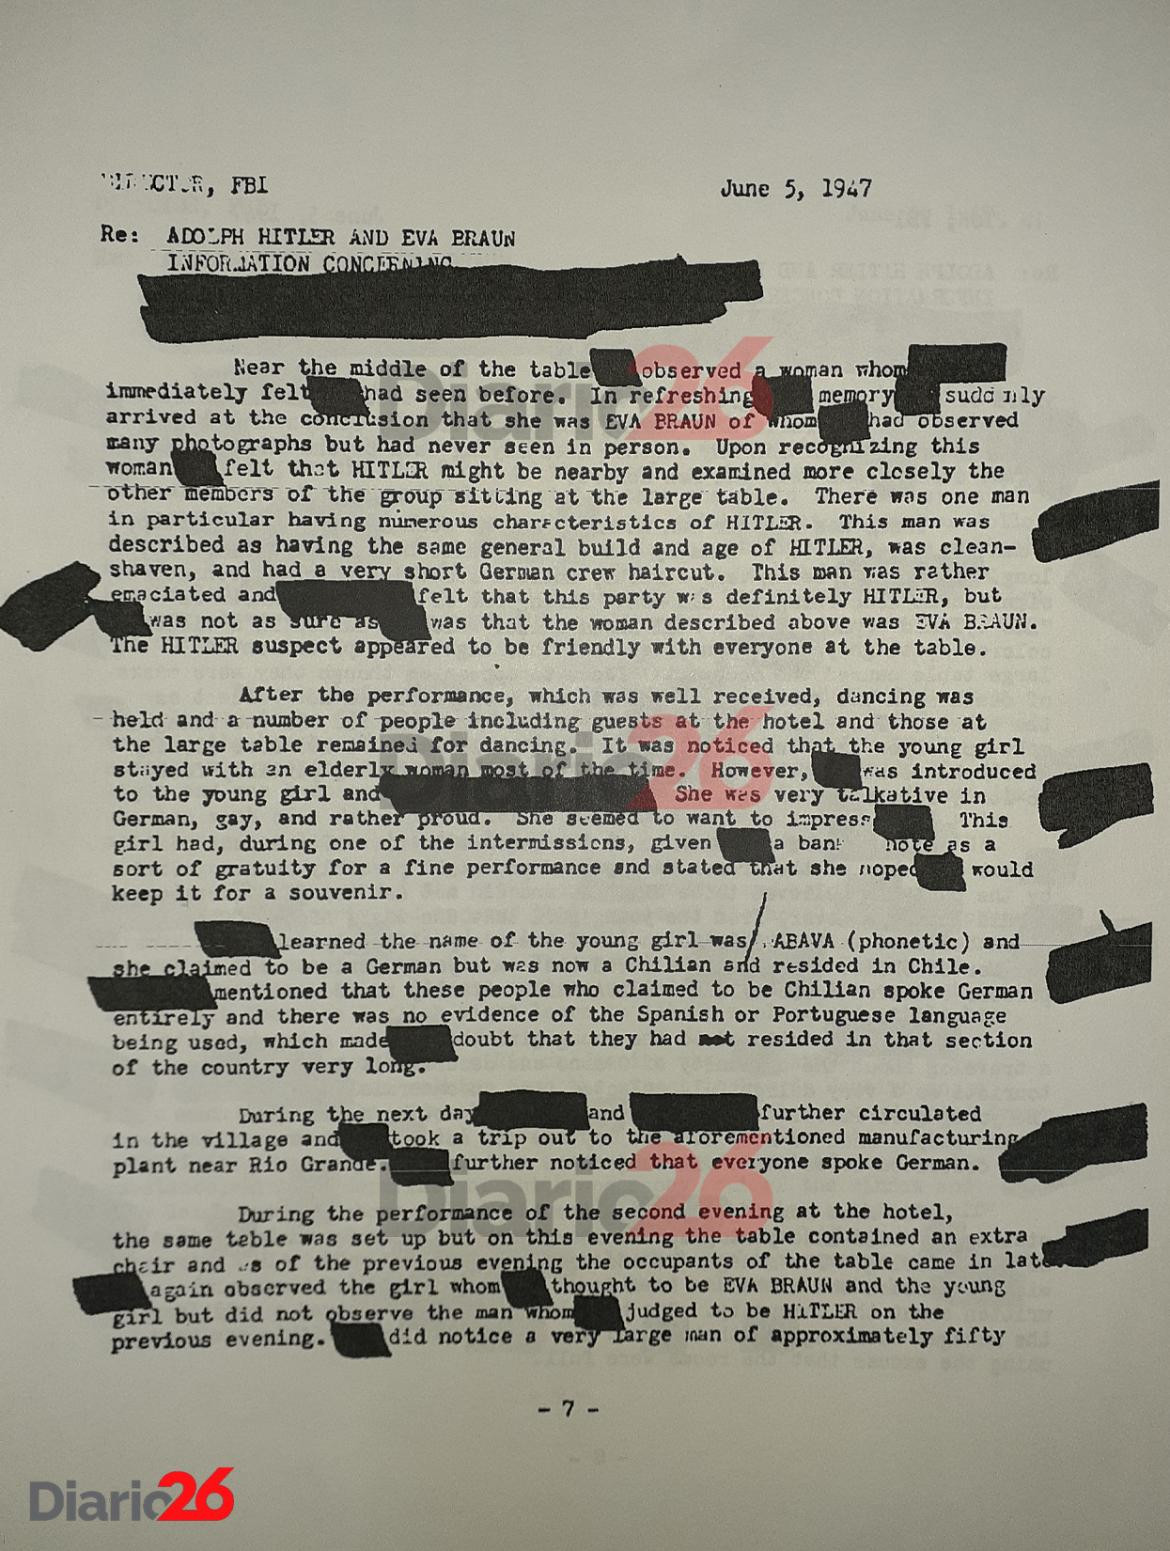 Adolf Hitler en Brasil, Hotel Atlántico, Cassino, documento desclasificado del FBI de 1947 - 07